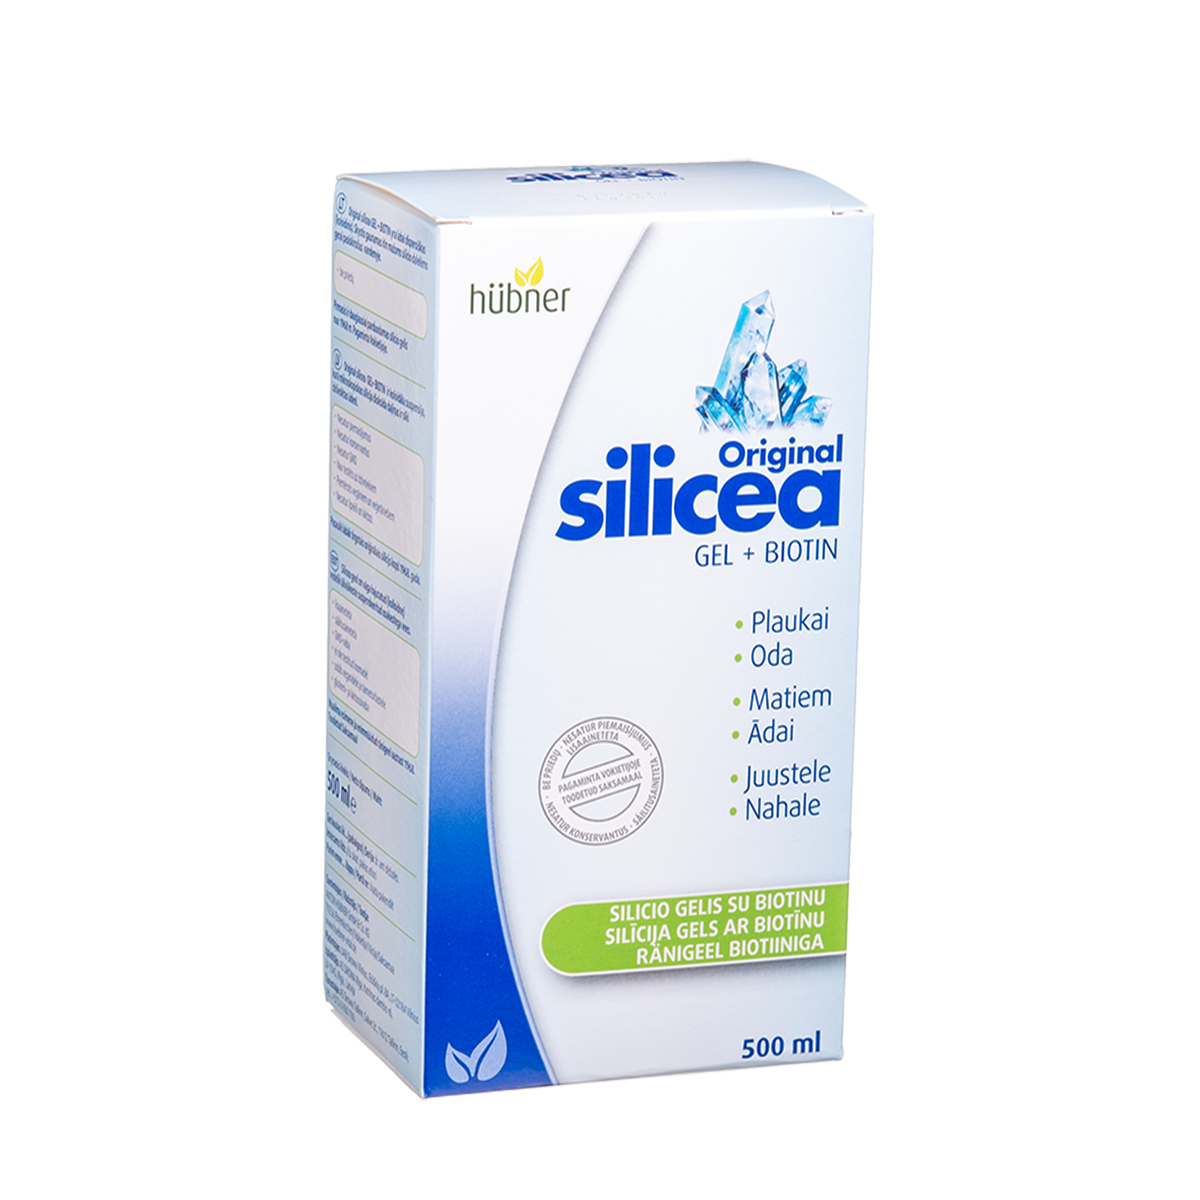 SILICEA ORIGINAL GEL + BIOTIN, silicio gelis su biotinu, 500 ml